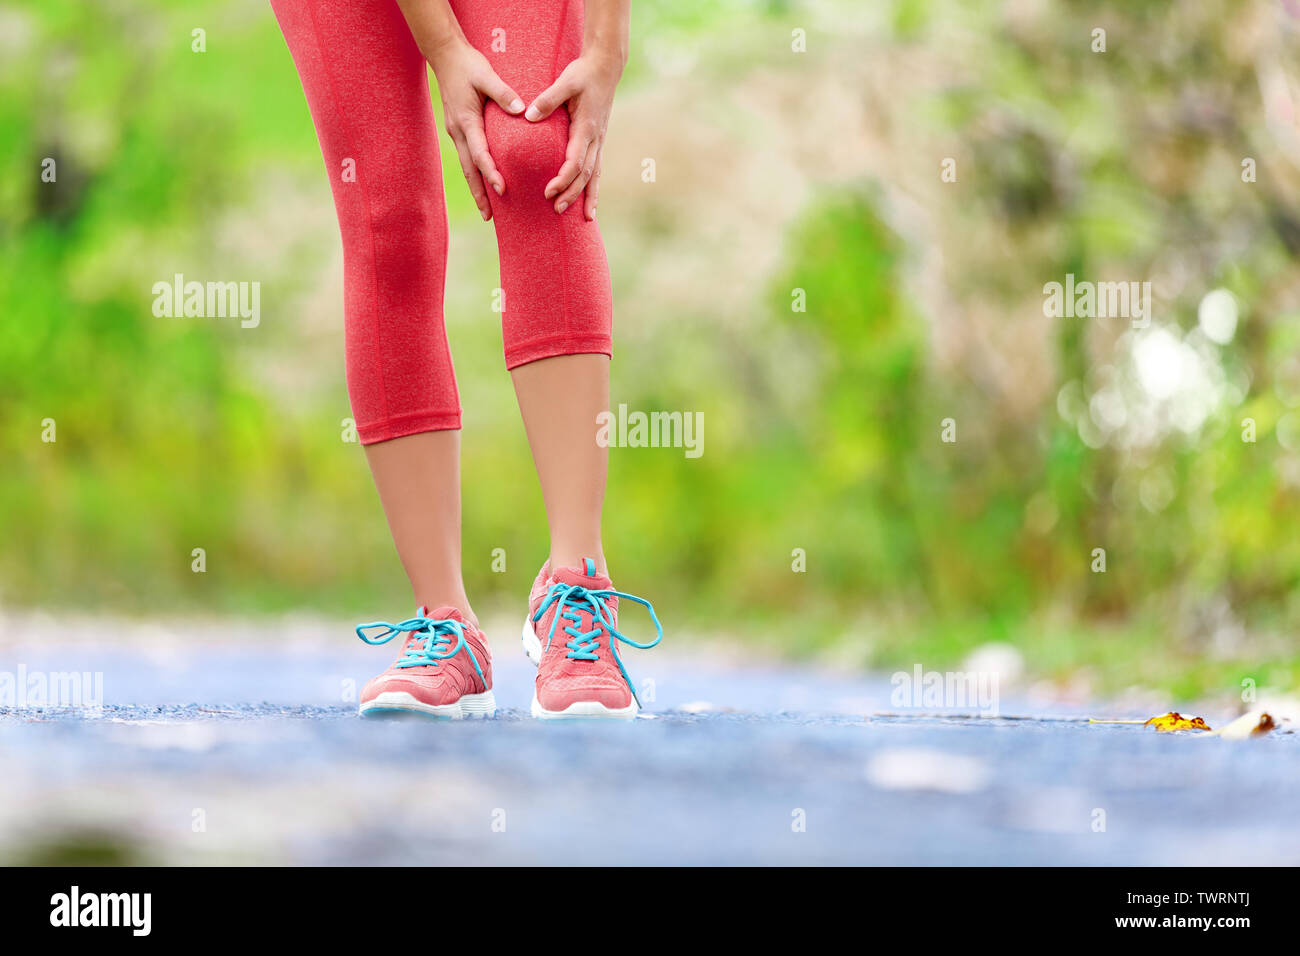 Blessure au genou - sport running femme sur les blessures au genou. Coureuse avec douleur de l'entorse du genou. Close up de jambes, muscle et du genou à l'extérieur dans la forêt. Banque D'Images